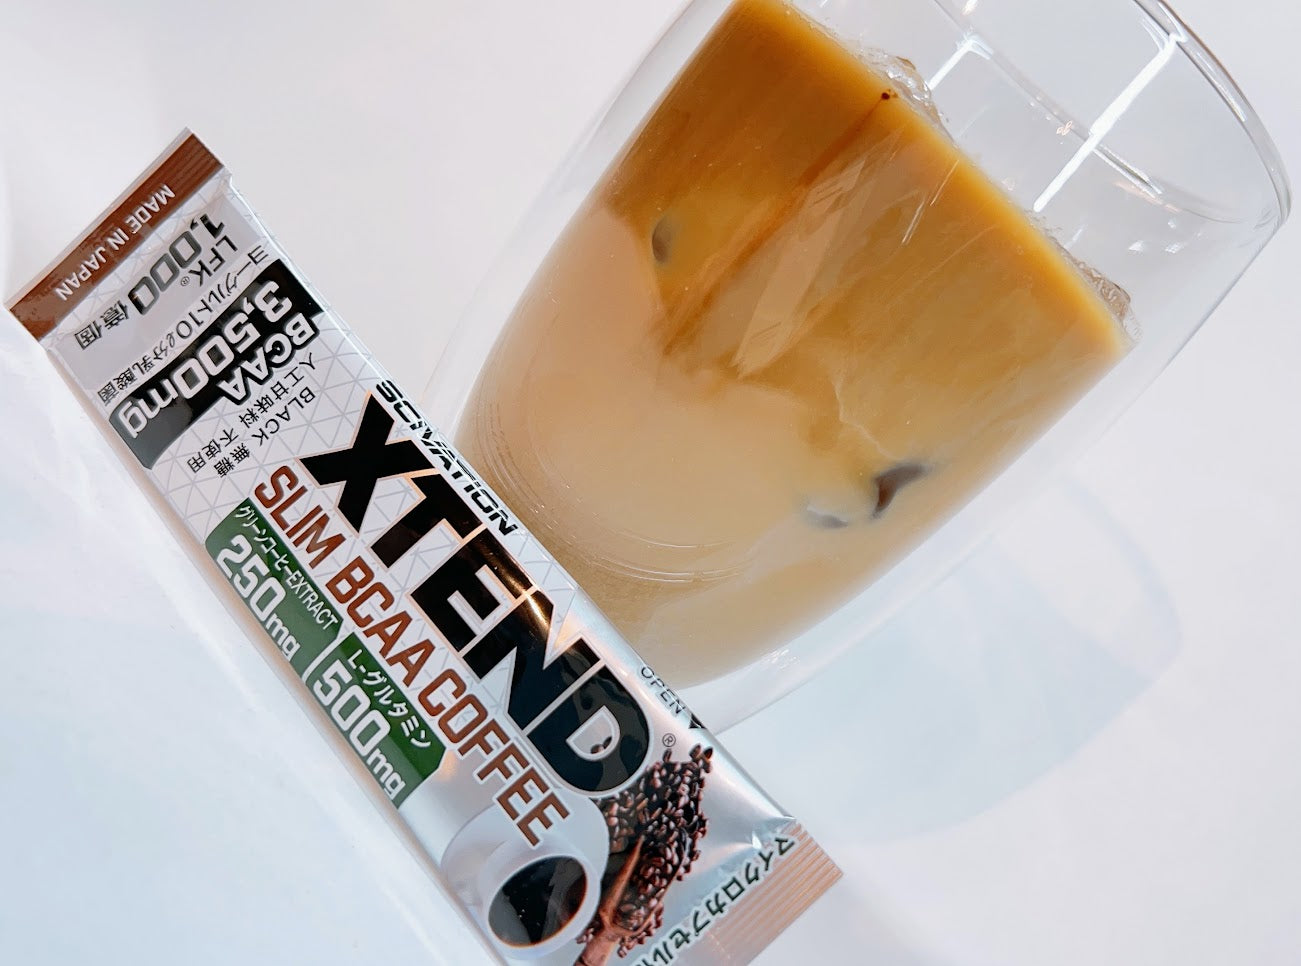 XTEND SLIM BCAA COFFEE 15本セット (エクステンド スリム BCAA コーヒー)